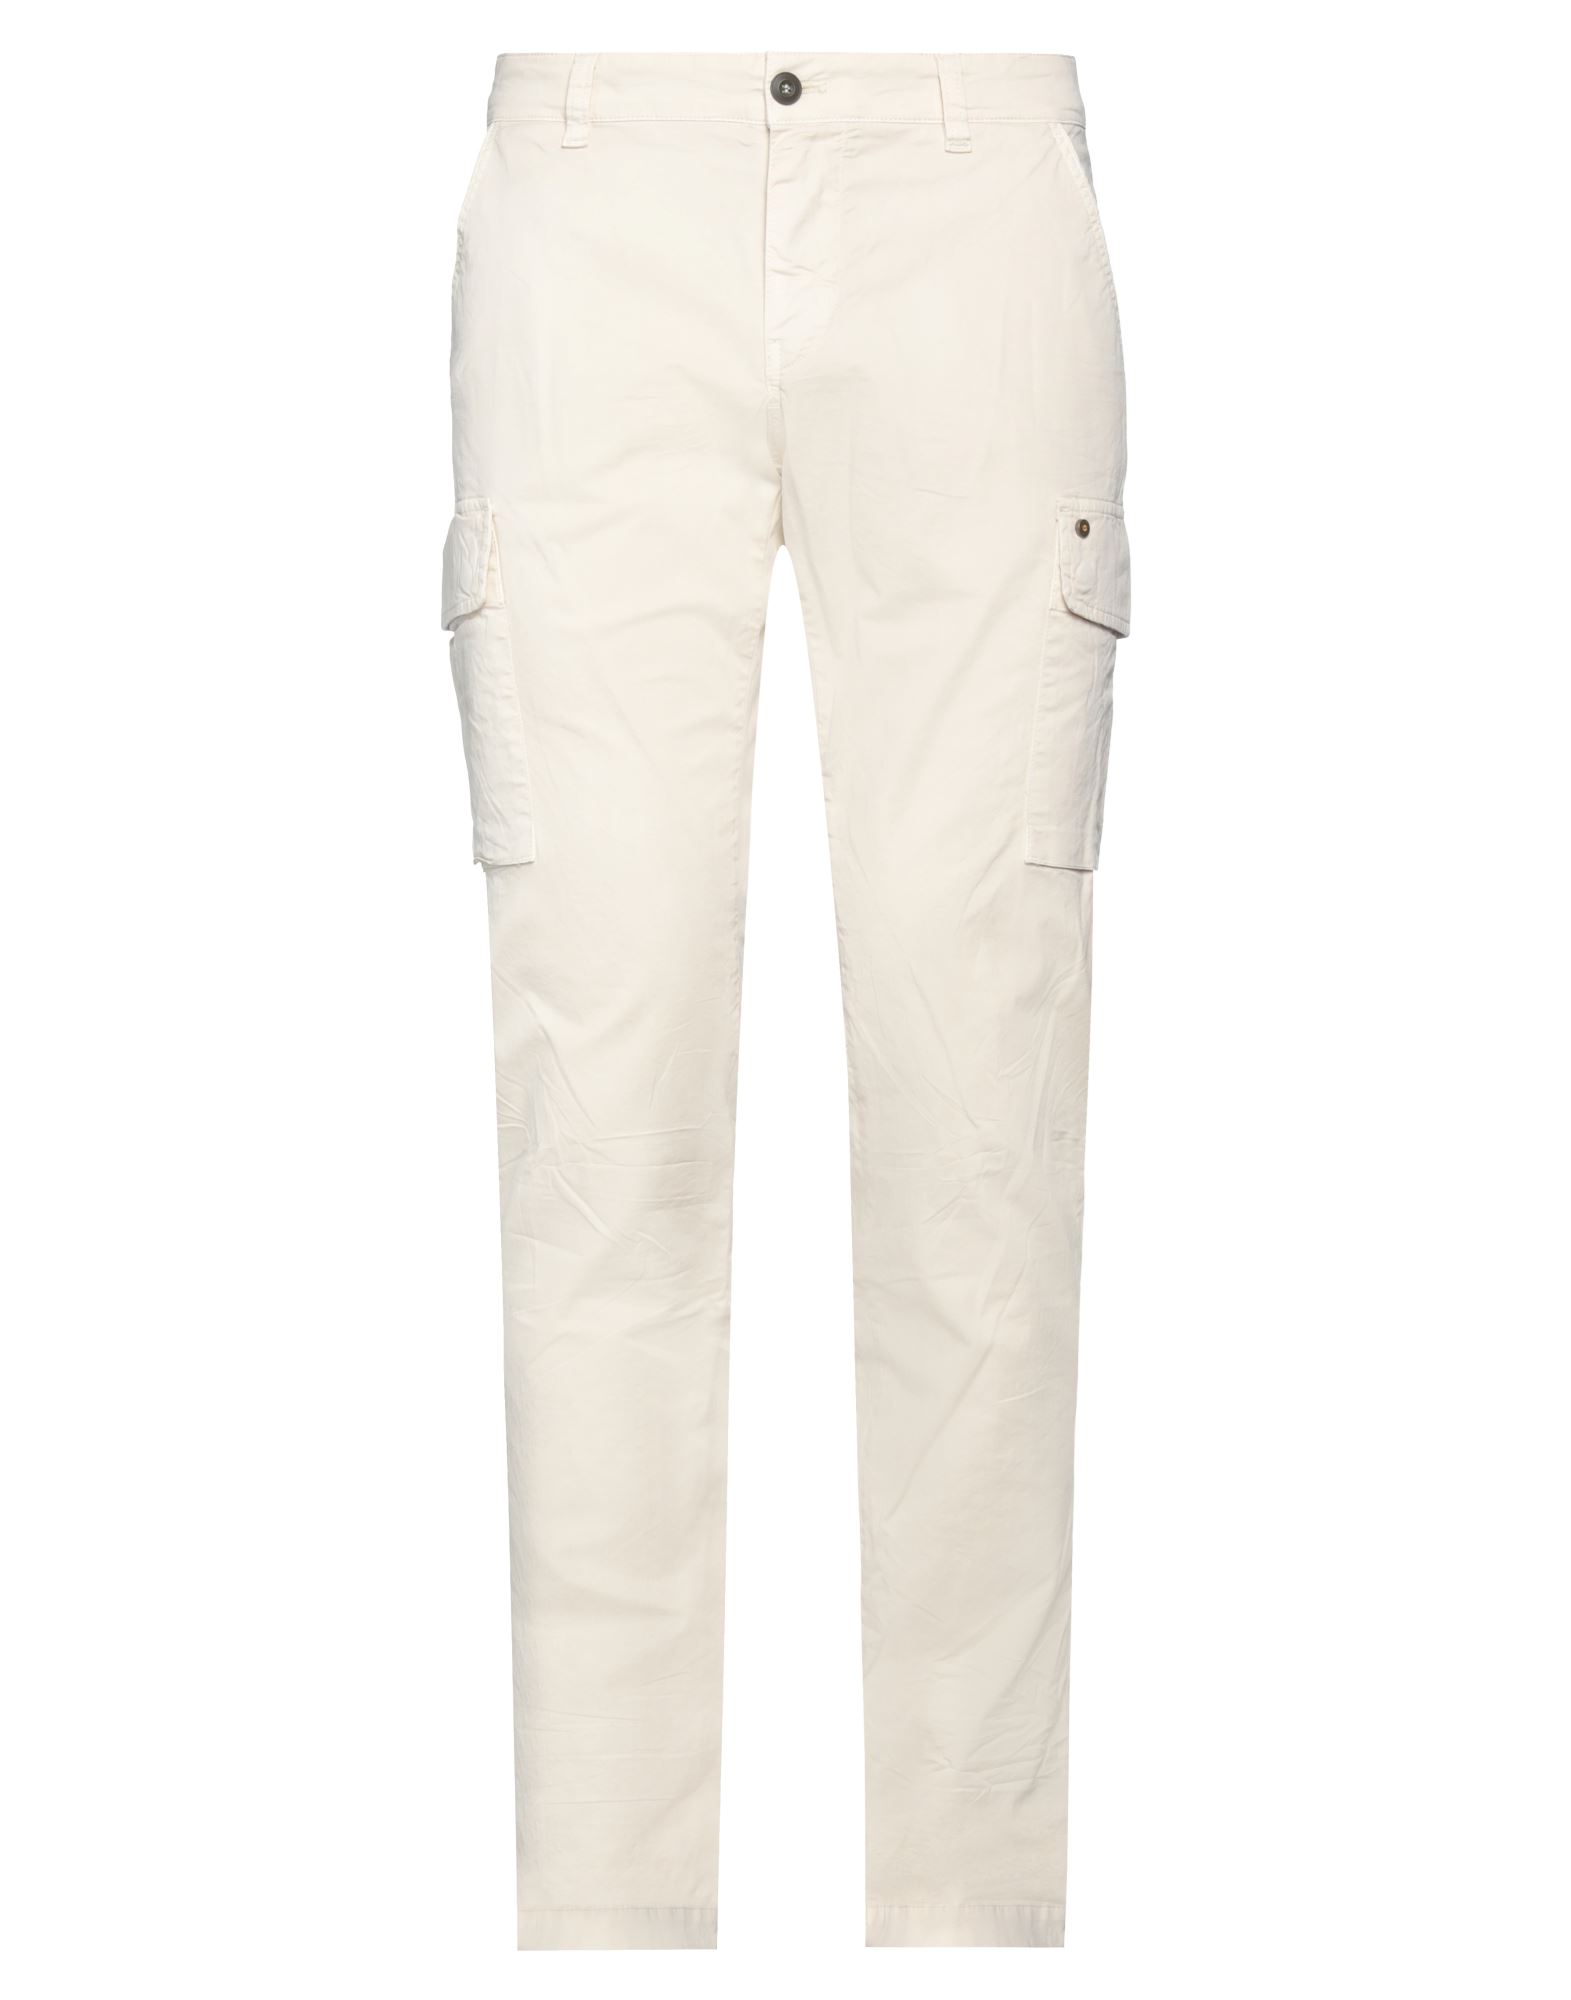 Mason's Man Pants Cream Size 38 Cotton, Elastane In White